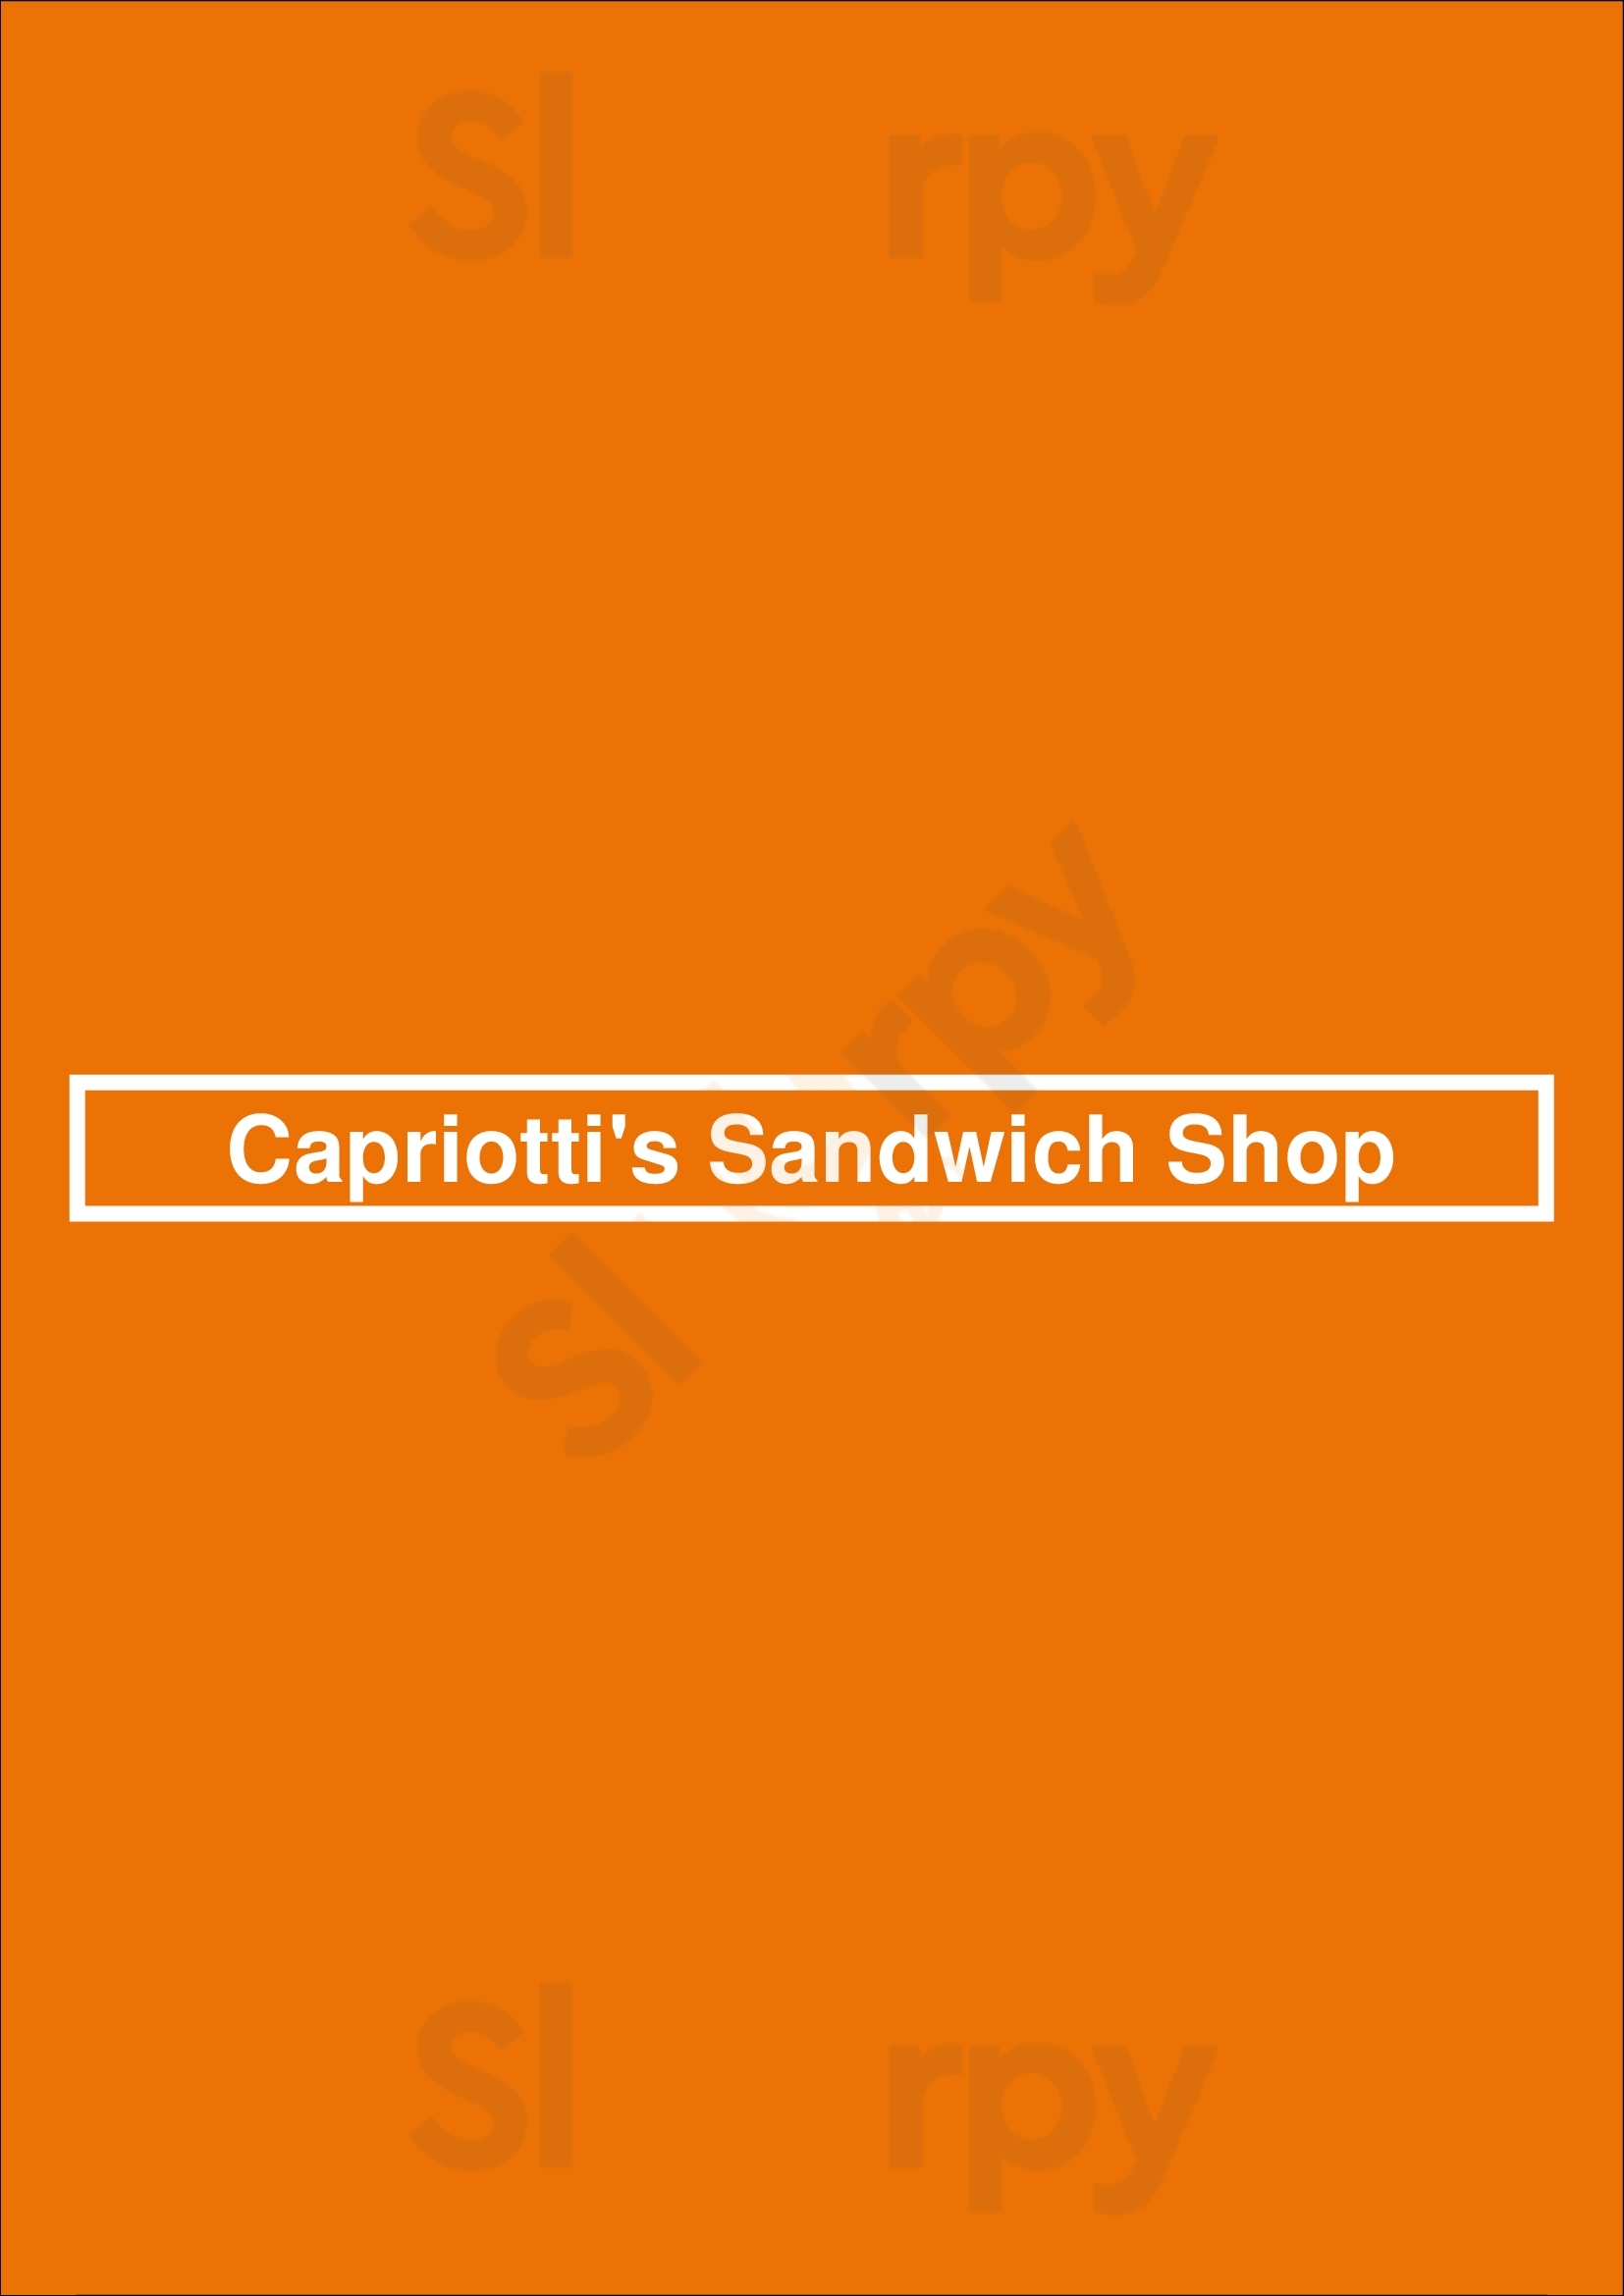 Capriotti's Sandwich Shop Las Vegas Menu - 1